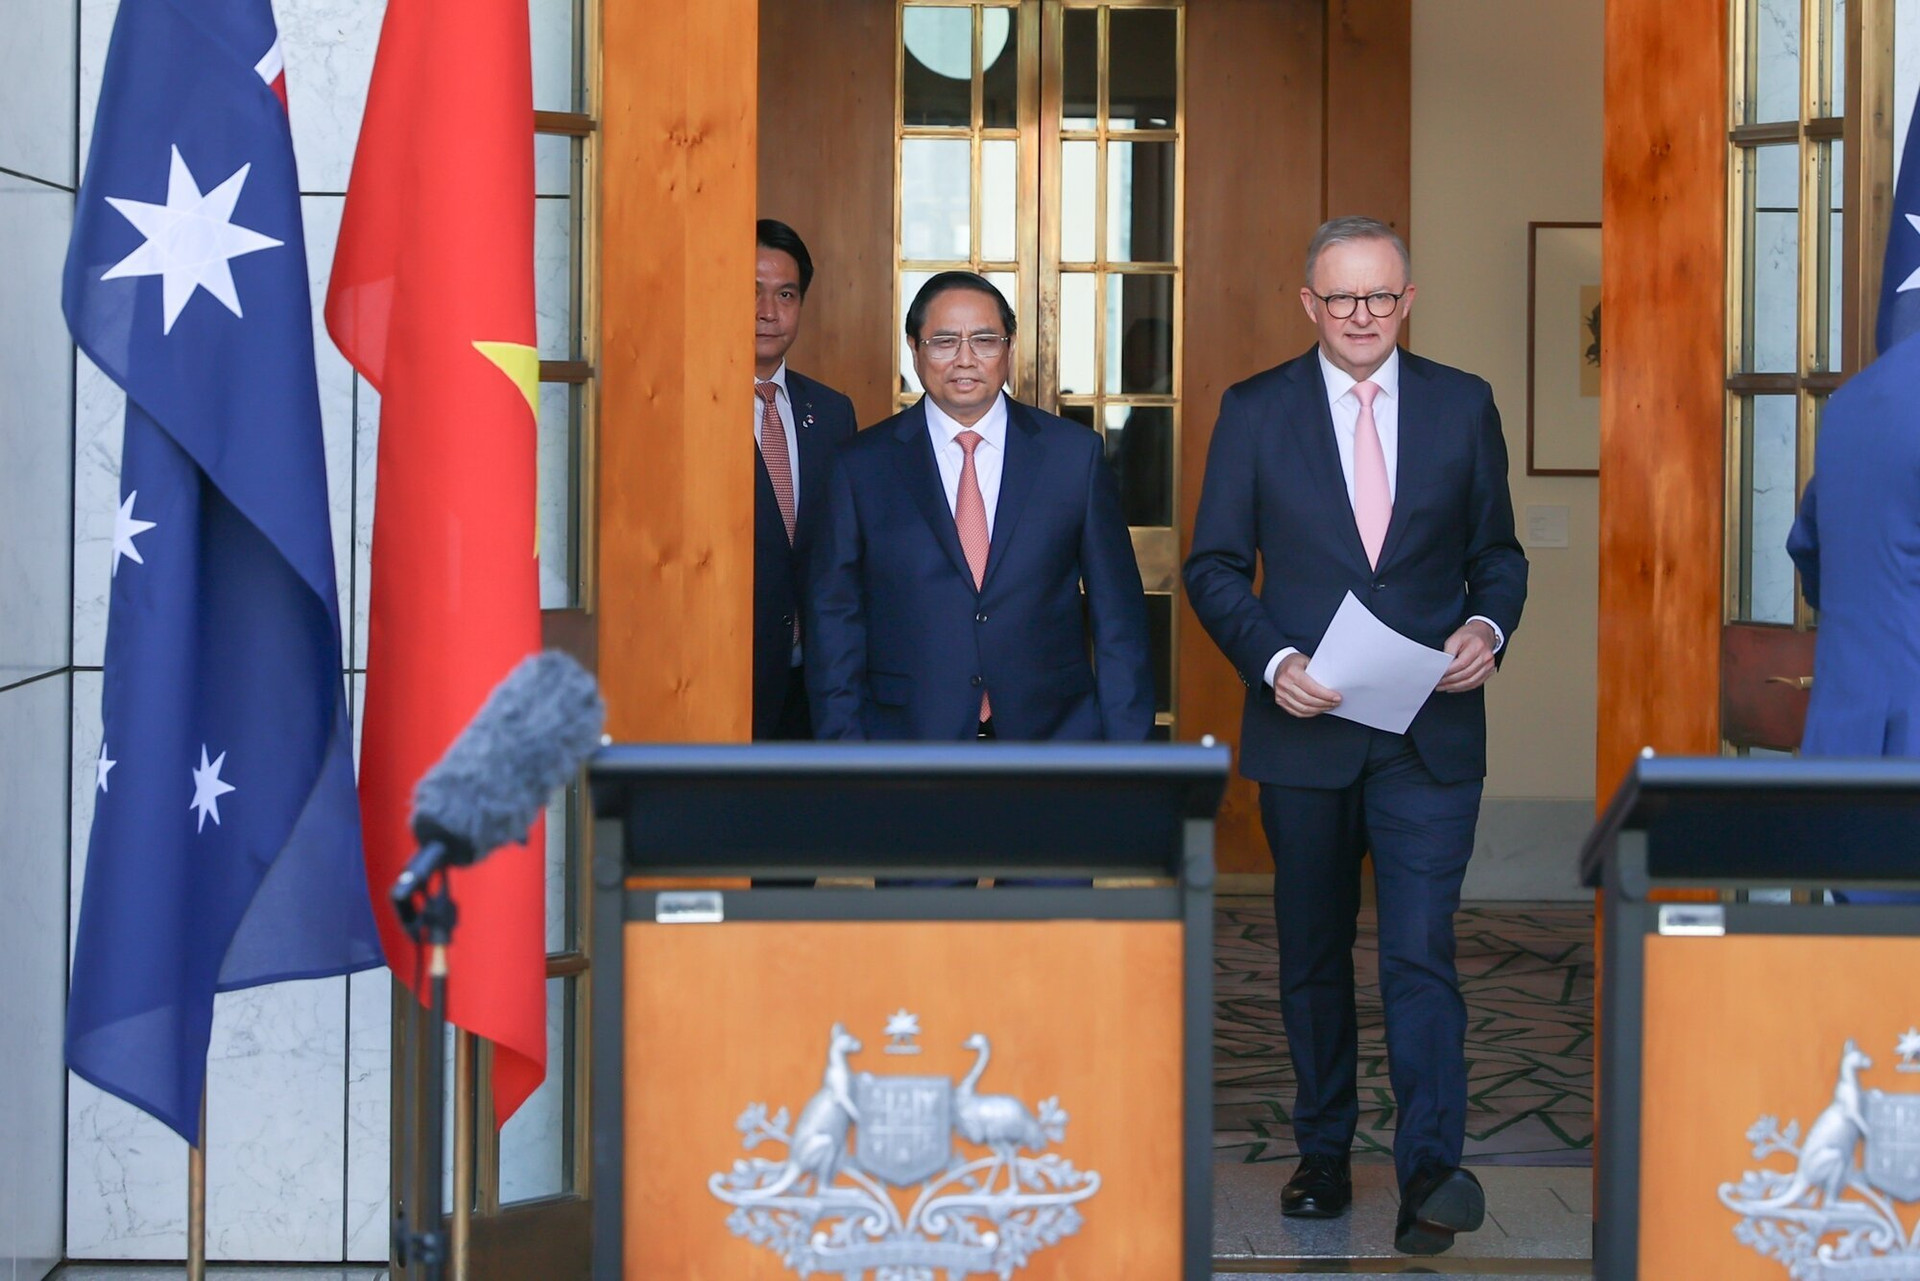 Thủ tướng Phạm Minh Chính và Thủ tướng Australia Anthony Albanese tới buổi họp báo, thông báo nâng cấp quan hệ Việt Nam-Australia lên mức cao nhất - quan hệ Đối tác Chiến lược toàn diện. (Ảnh: VGP/Nhật Bắc)